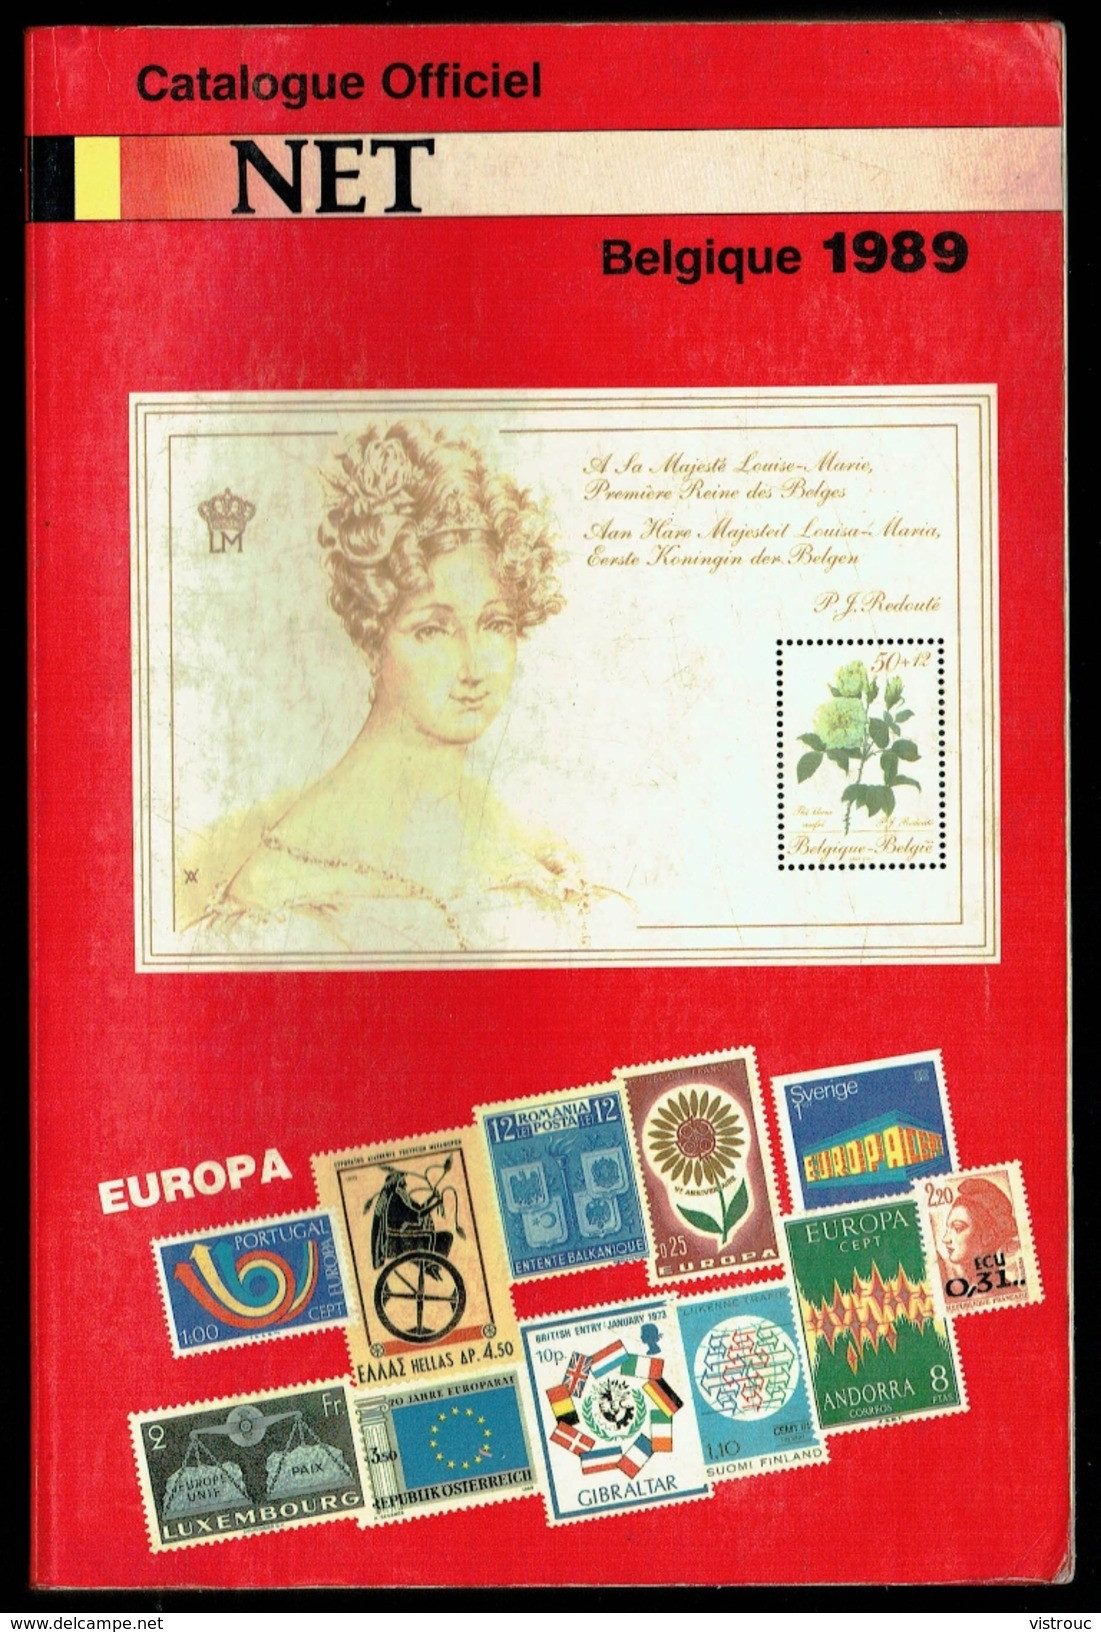 Catalogue Officiel NET (FR) 1989 - Timbres De Belgique. - Belgien